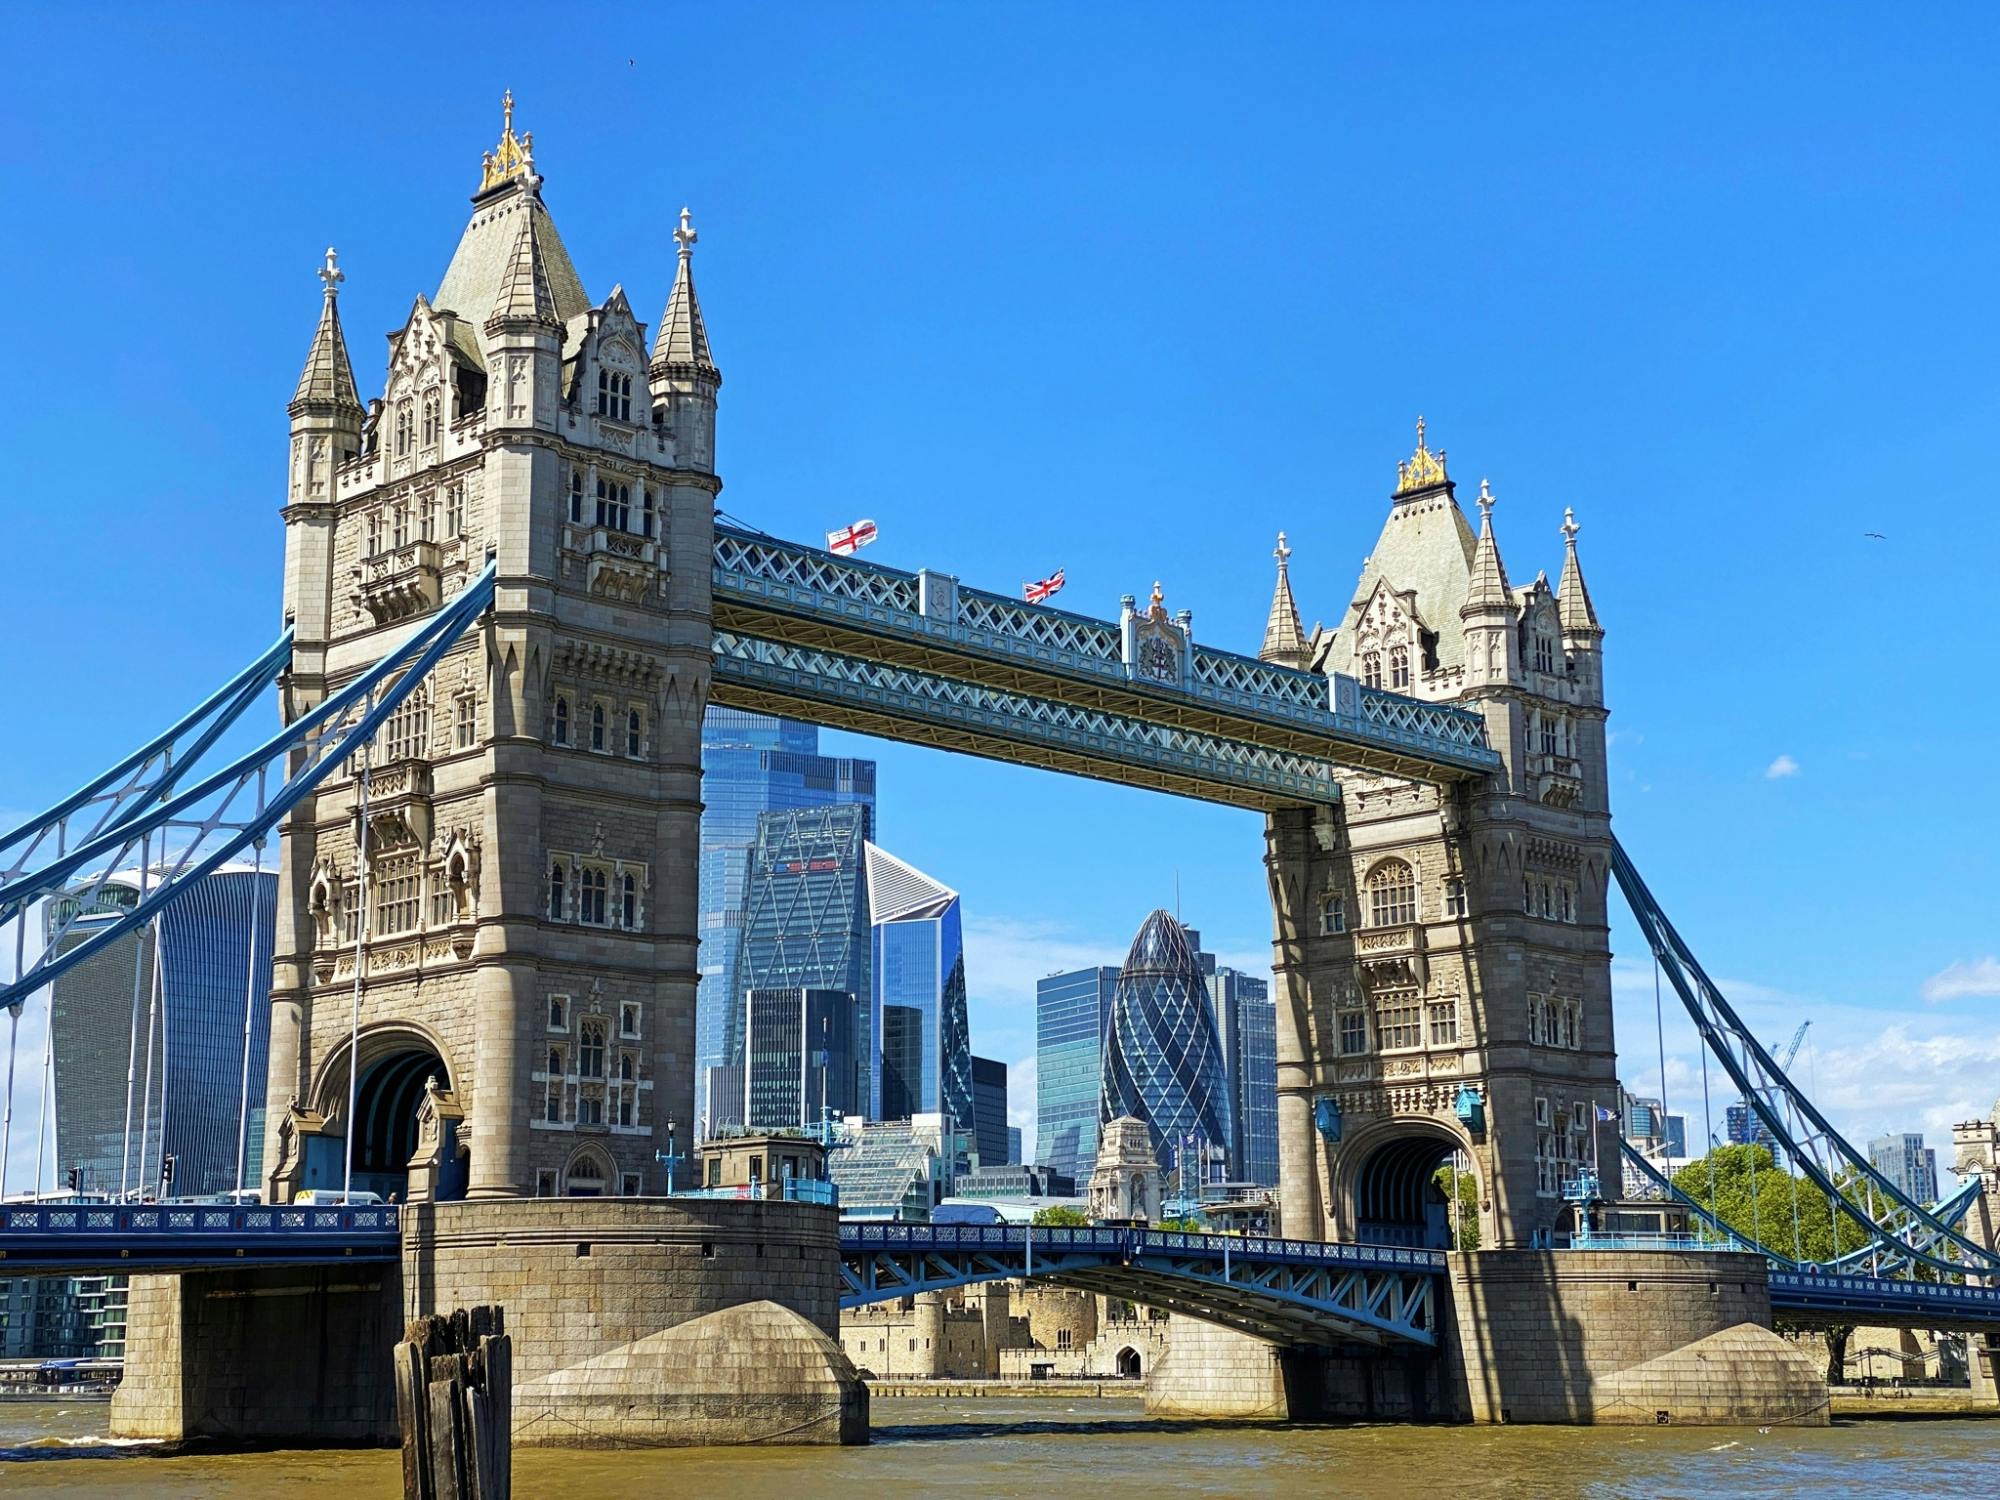 Discovery Game: Smart wandeling in zuidoost-Londen - De geschiedenis langs de rivier